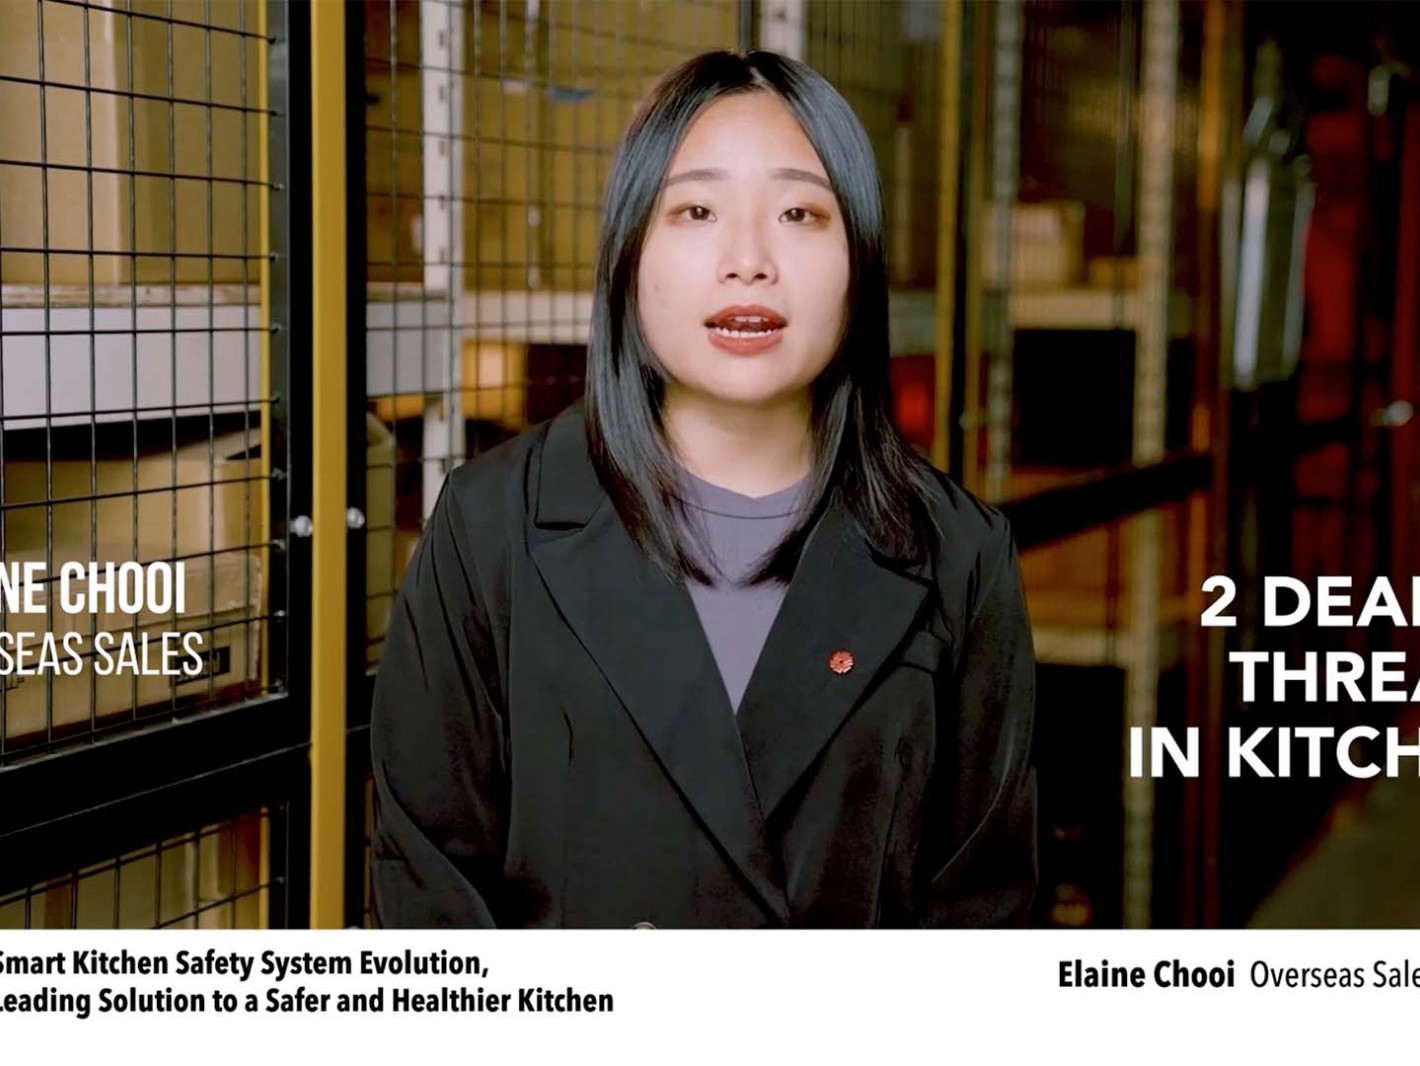 耀主科技股份有限公司徐沛琳Elaine Chooi 國外業務介紹如何透過e+瓦斯爐自動關火器改變世界爐具用火安全與健康方式